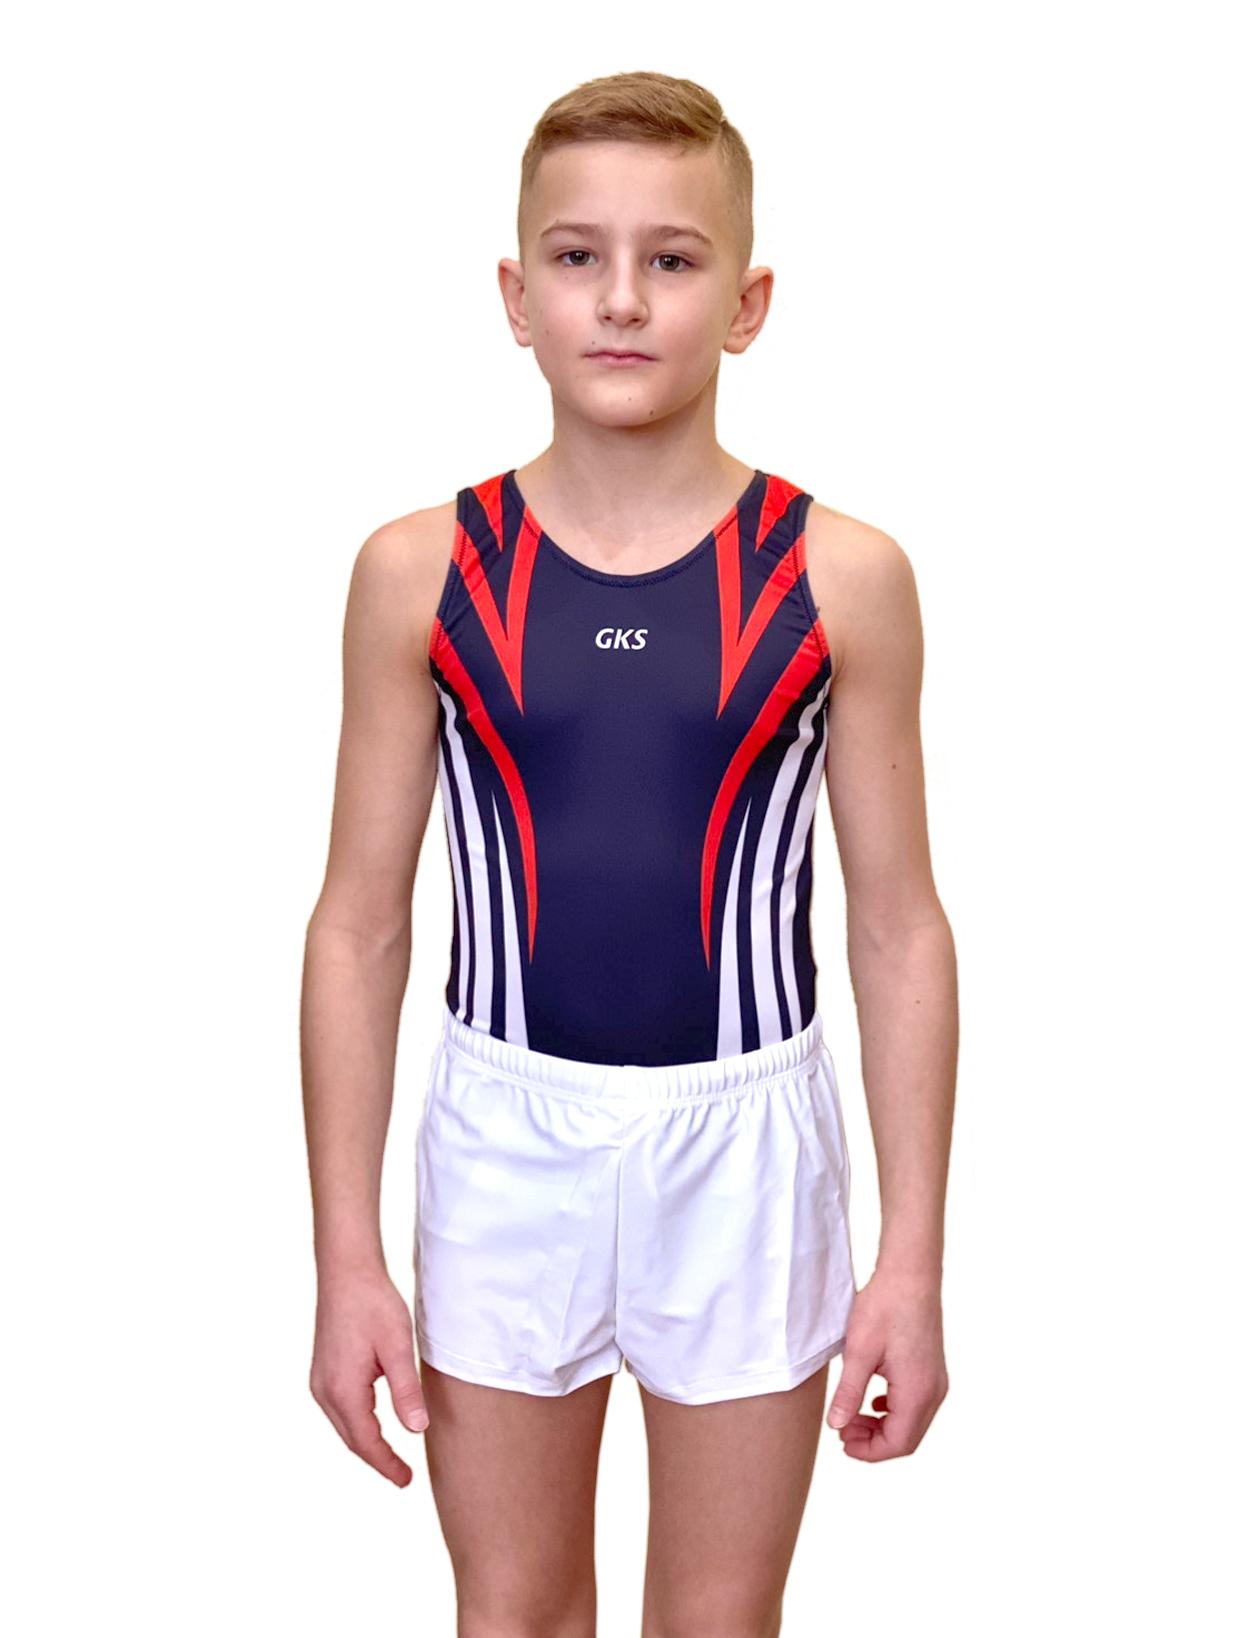 Купальник мужской для спортивной гимнастики GK Sport 201-19 темно-синий с красно-белыми полосками без рукава